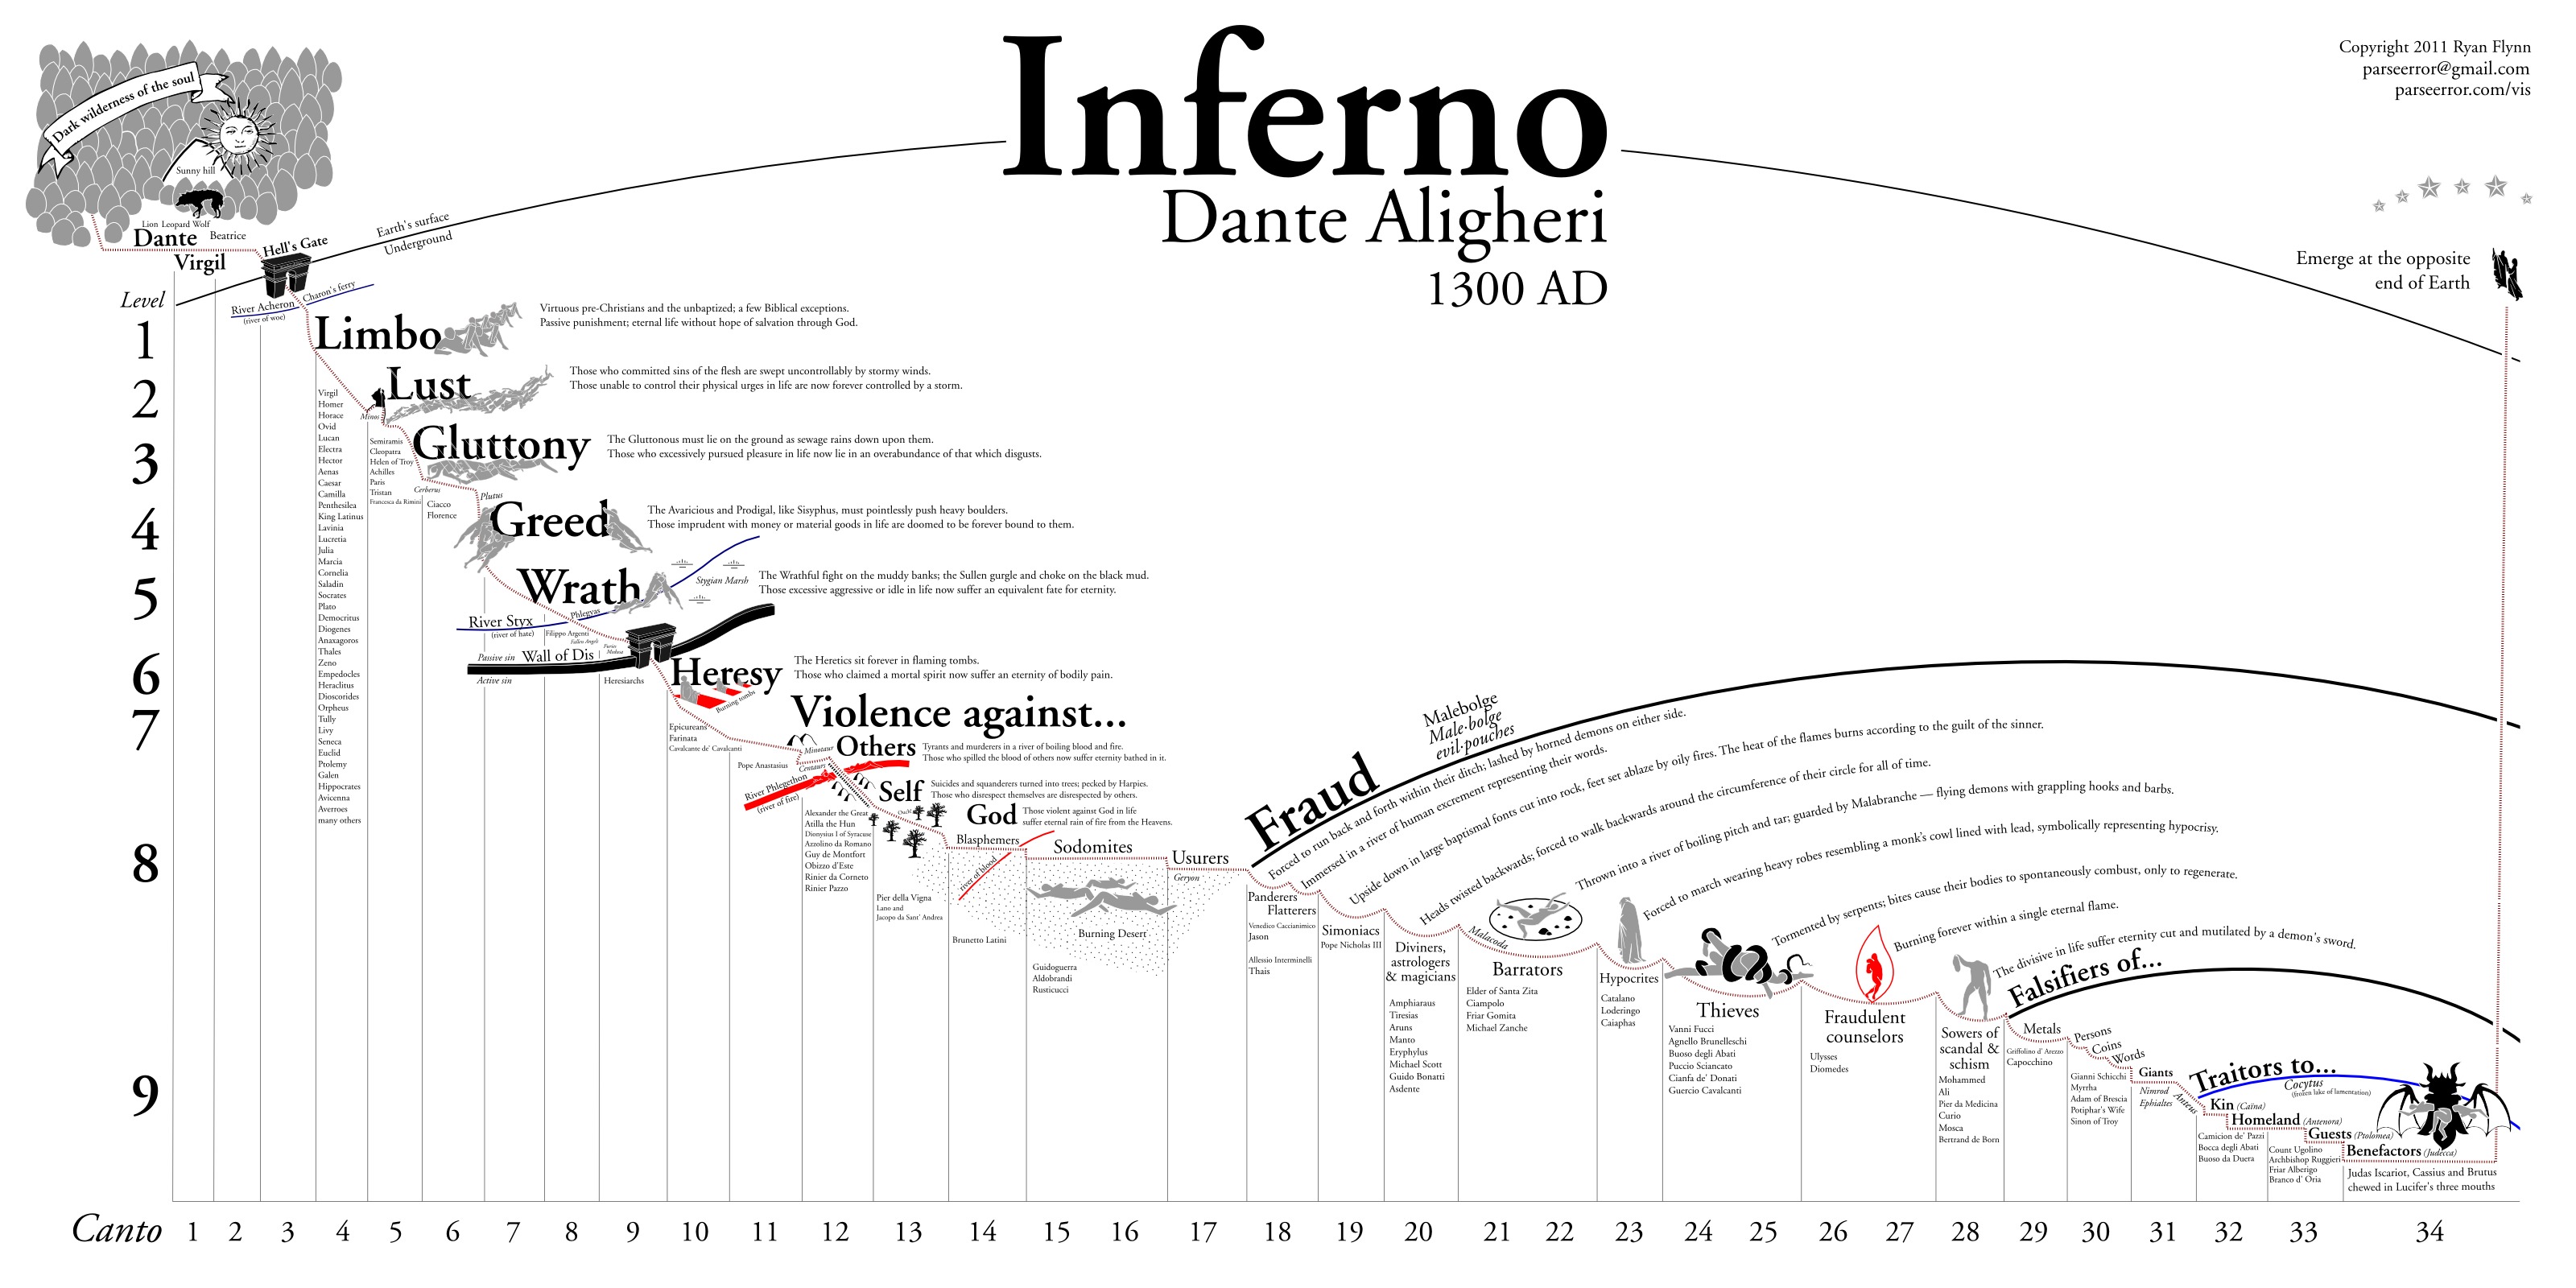 Dante's Inferno #4